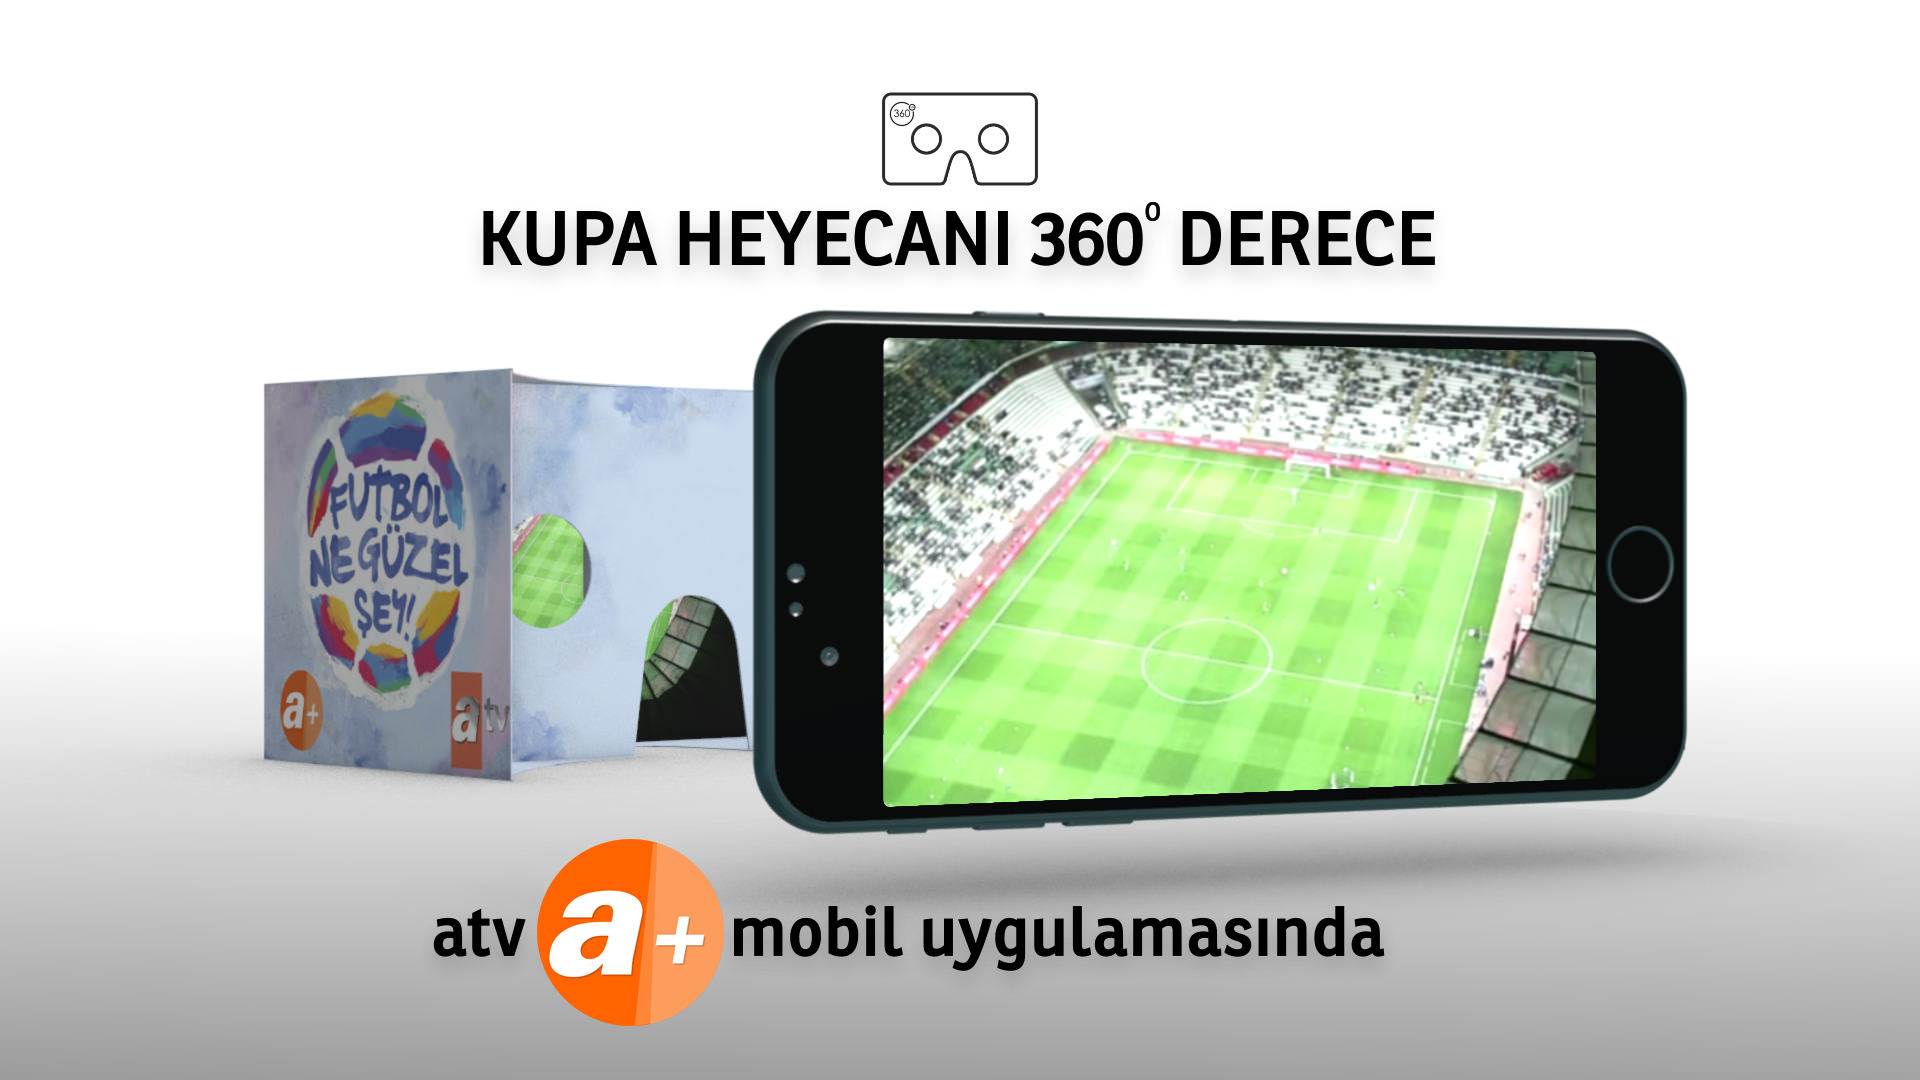 ATV, 26 Mayıs tarihinde Galatasaray ile Fenerbahçe arasında oynanacak Ziraat Türkiye Kupası final maçını 360 derece sunacak.